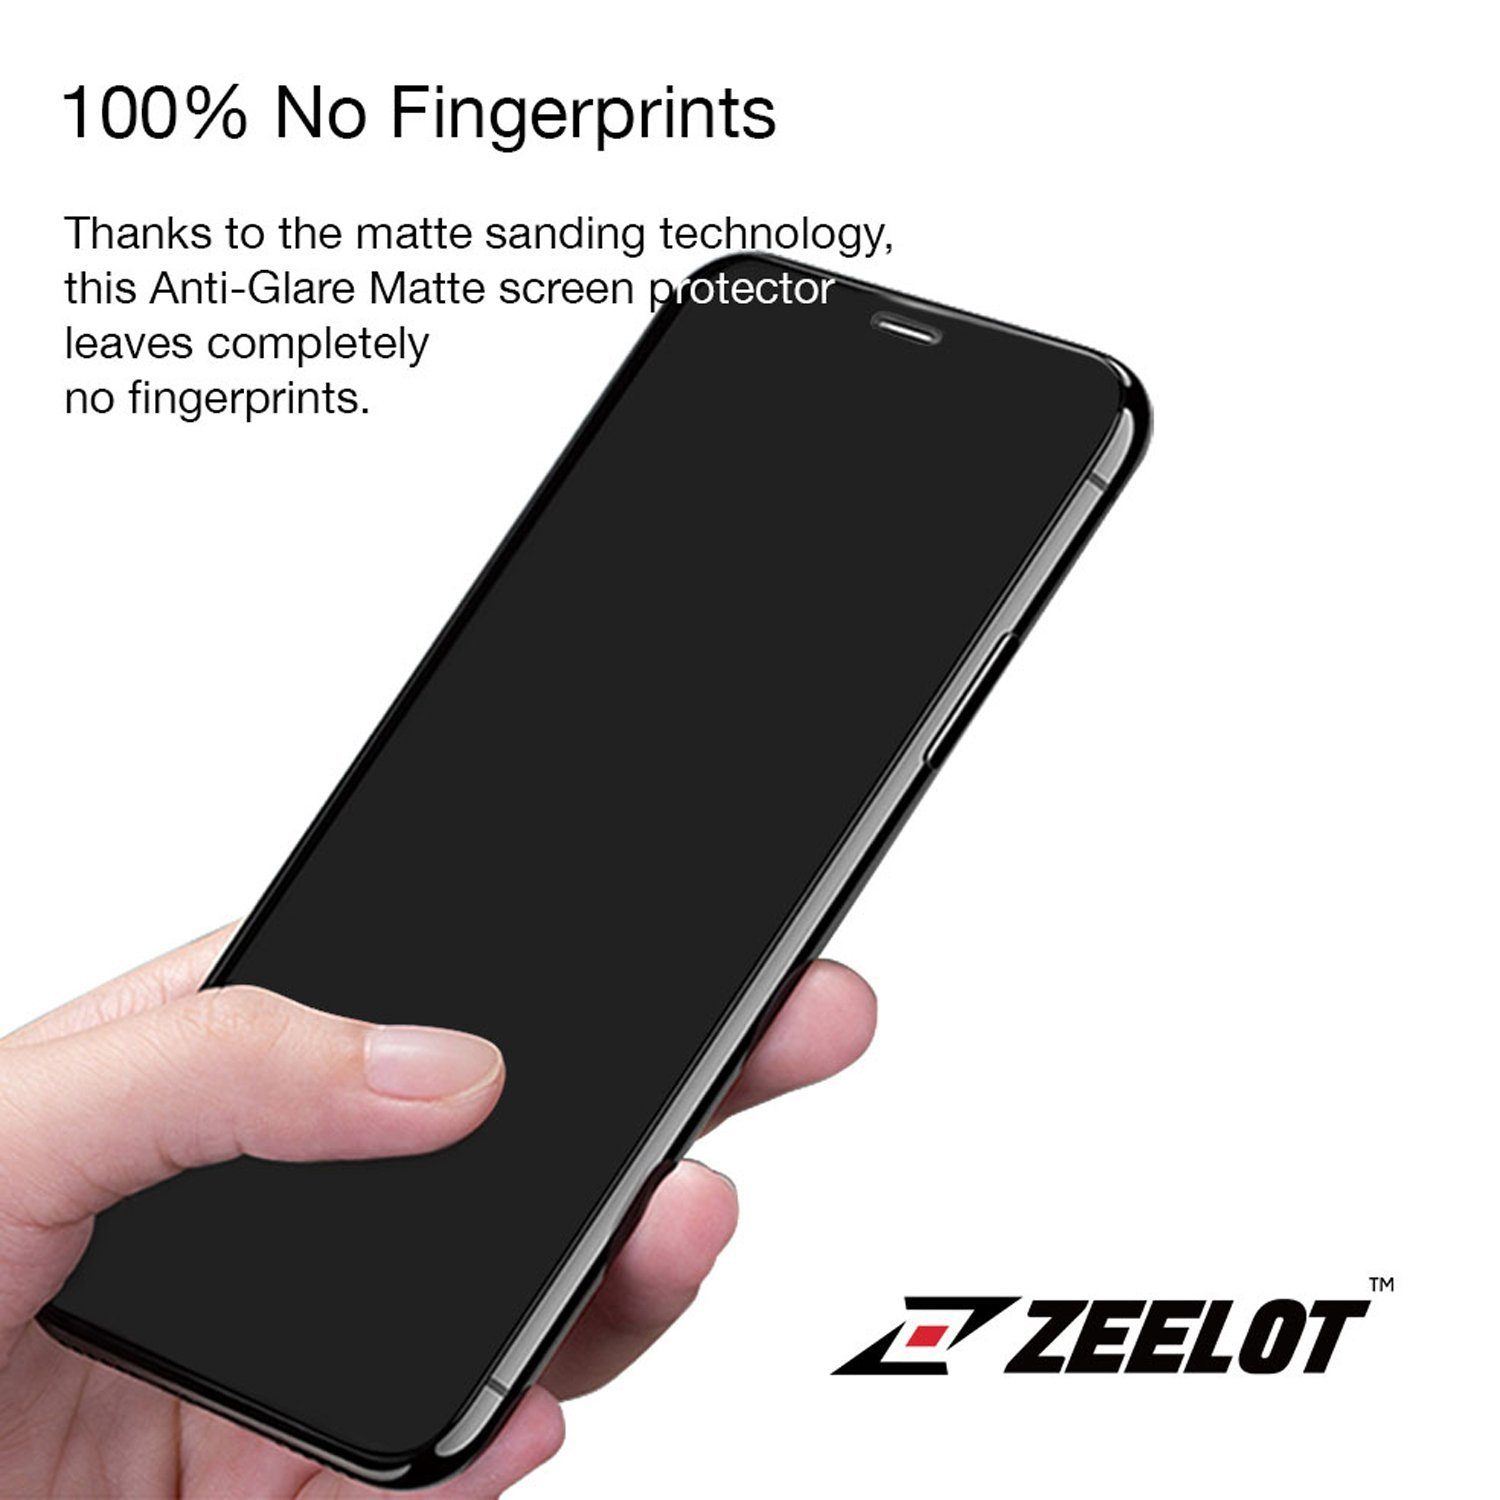 ZEELOT PureGlass 2.5D Tempered Glass Screen Protector for Google Pixel 4 XL, Clear Tempered Glass ZEELOT 